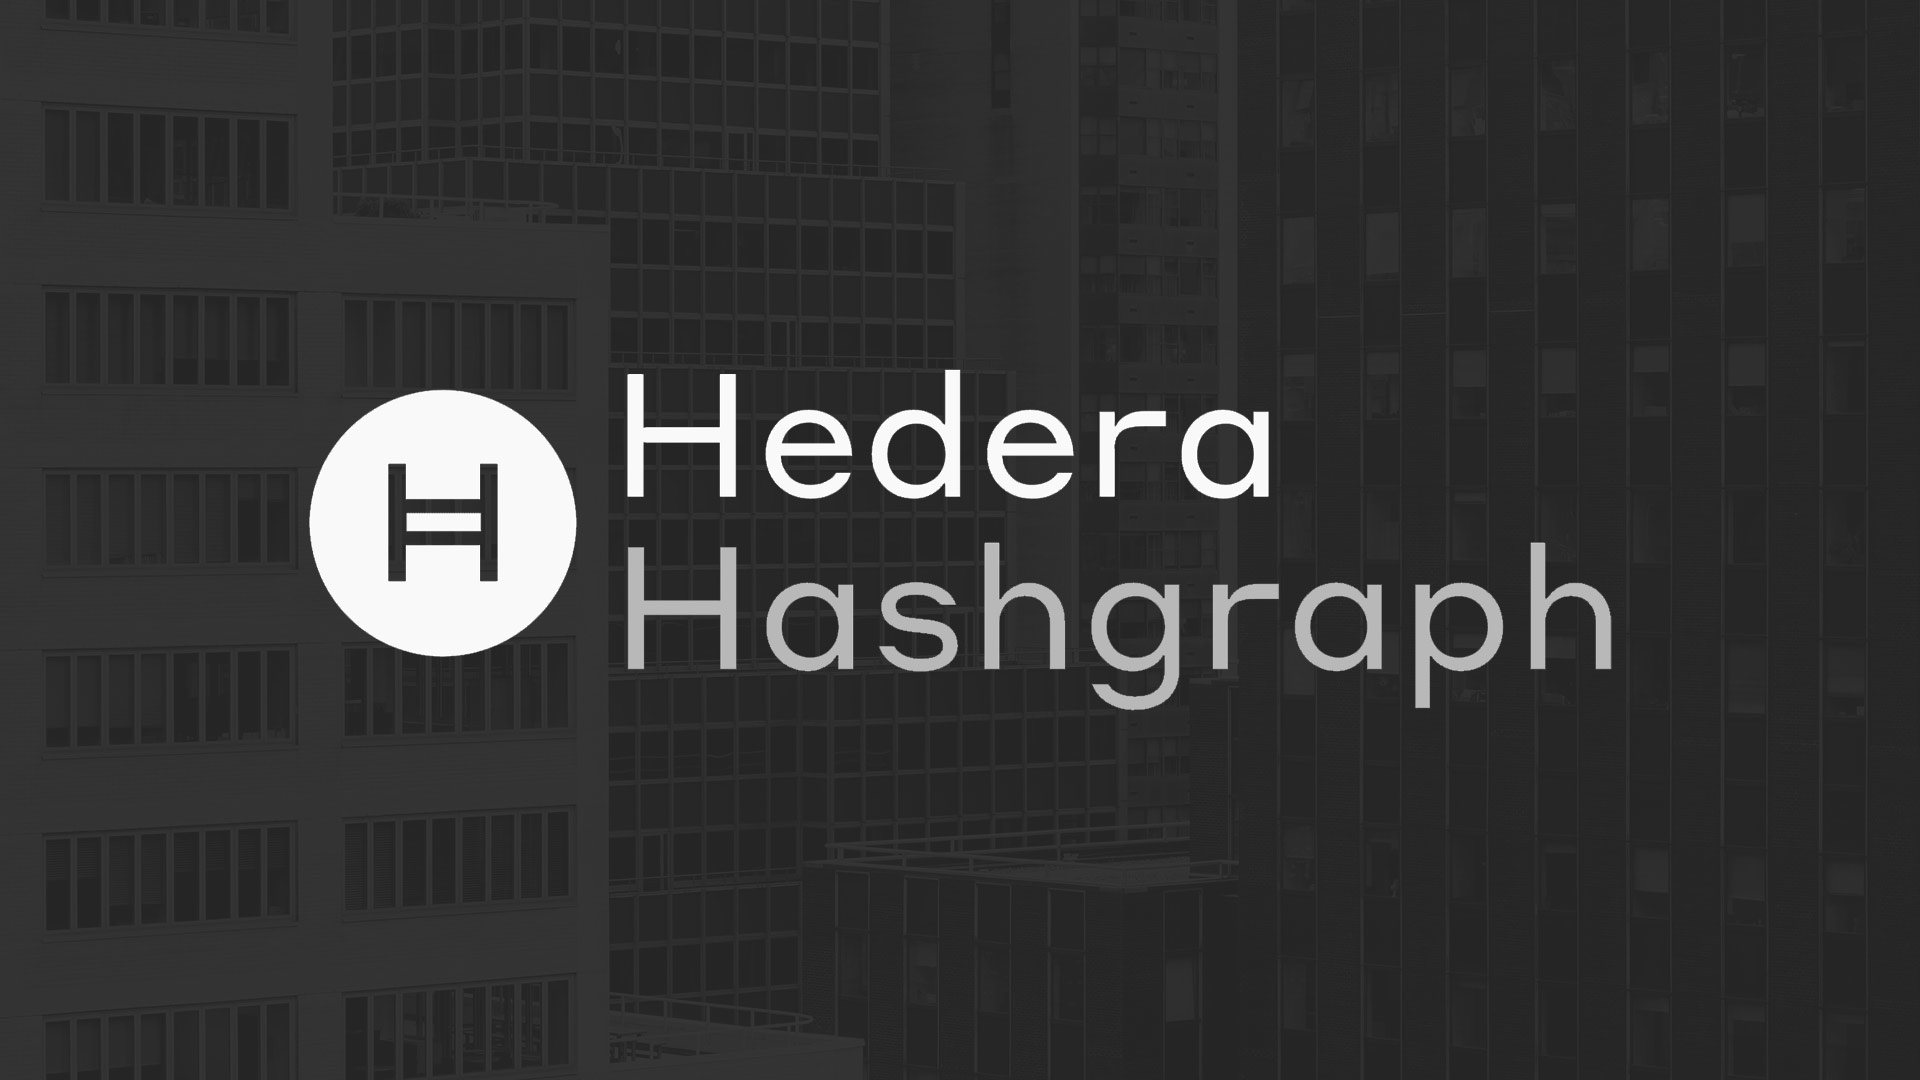 Valore dei token di Hedera in aumento dopo l'annuncio di Google Cloud come membro del consiglio direttivo - hedera hashgraph